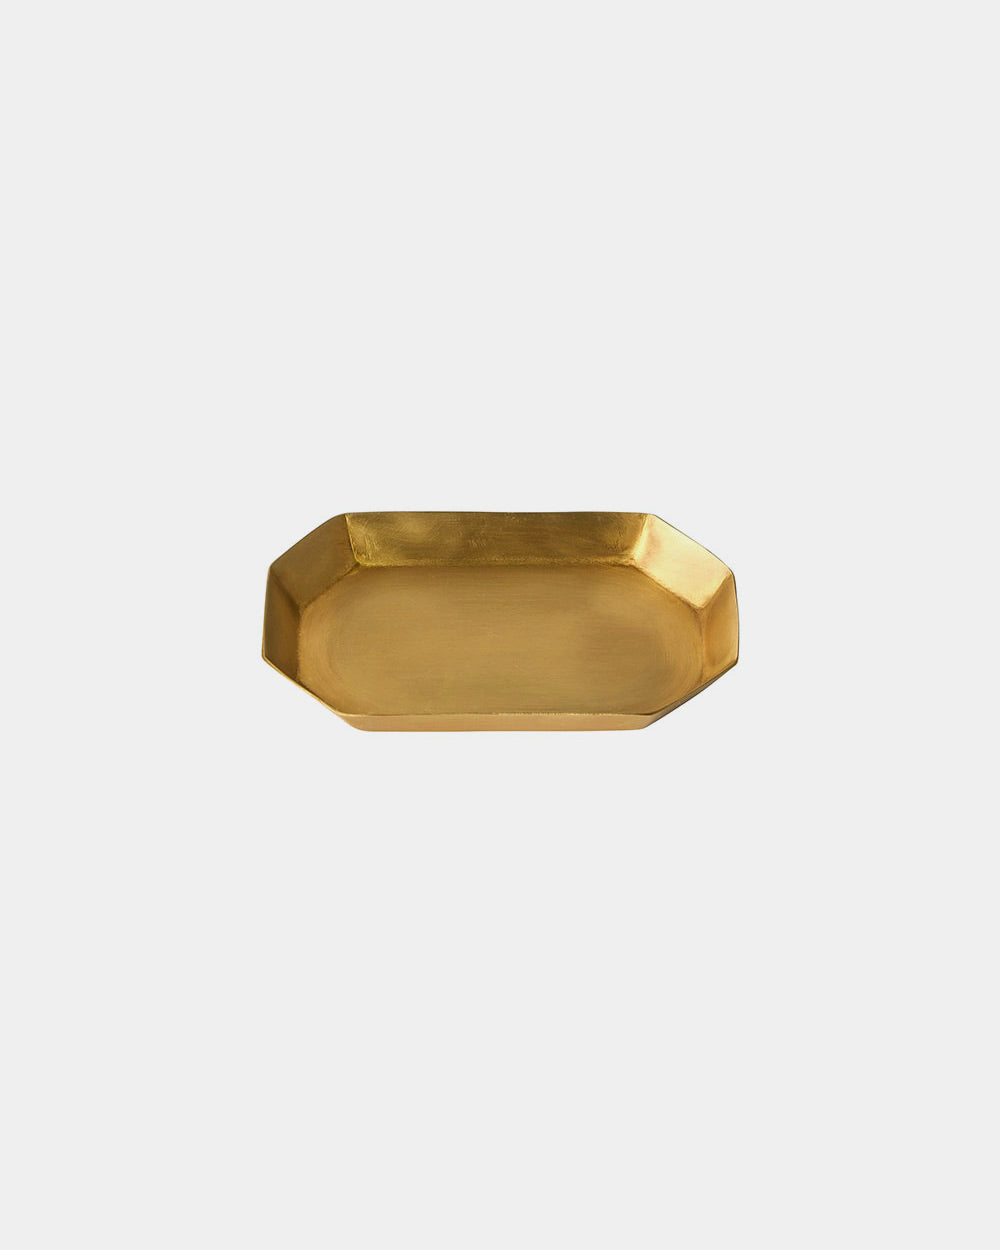 Brass Plate Long Octagonal: X-Small